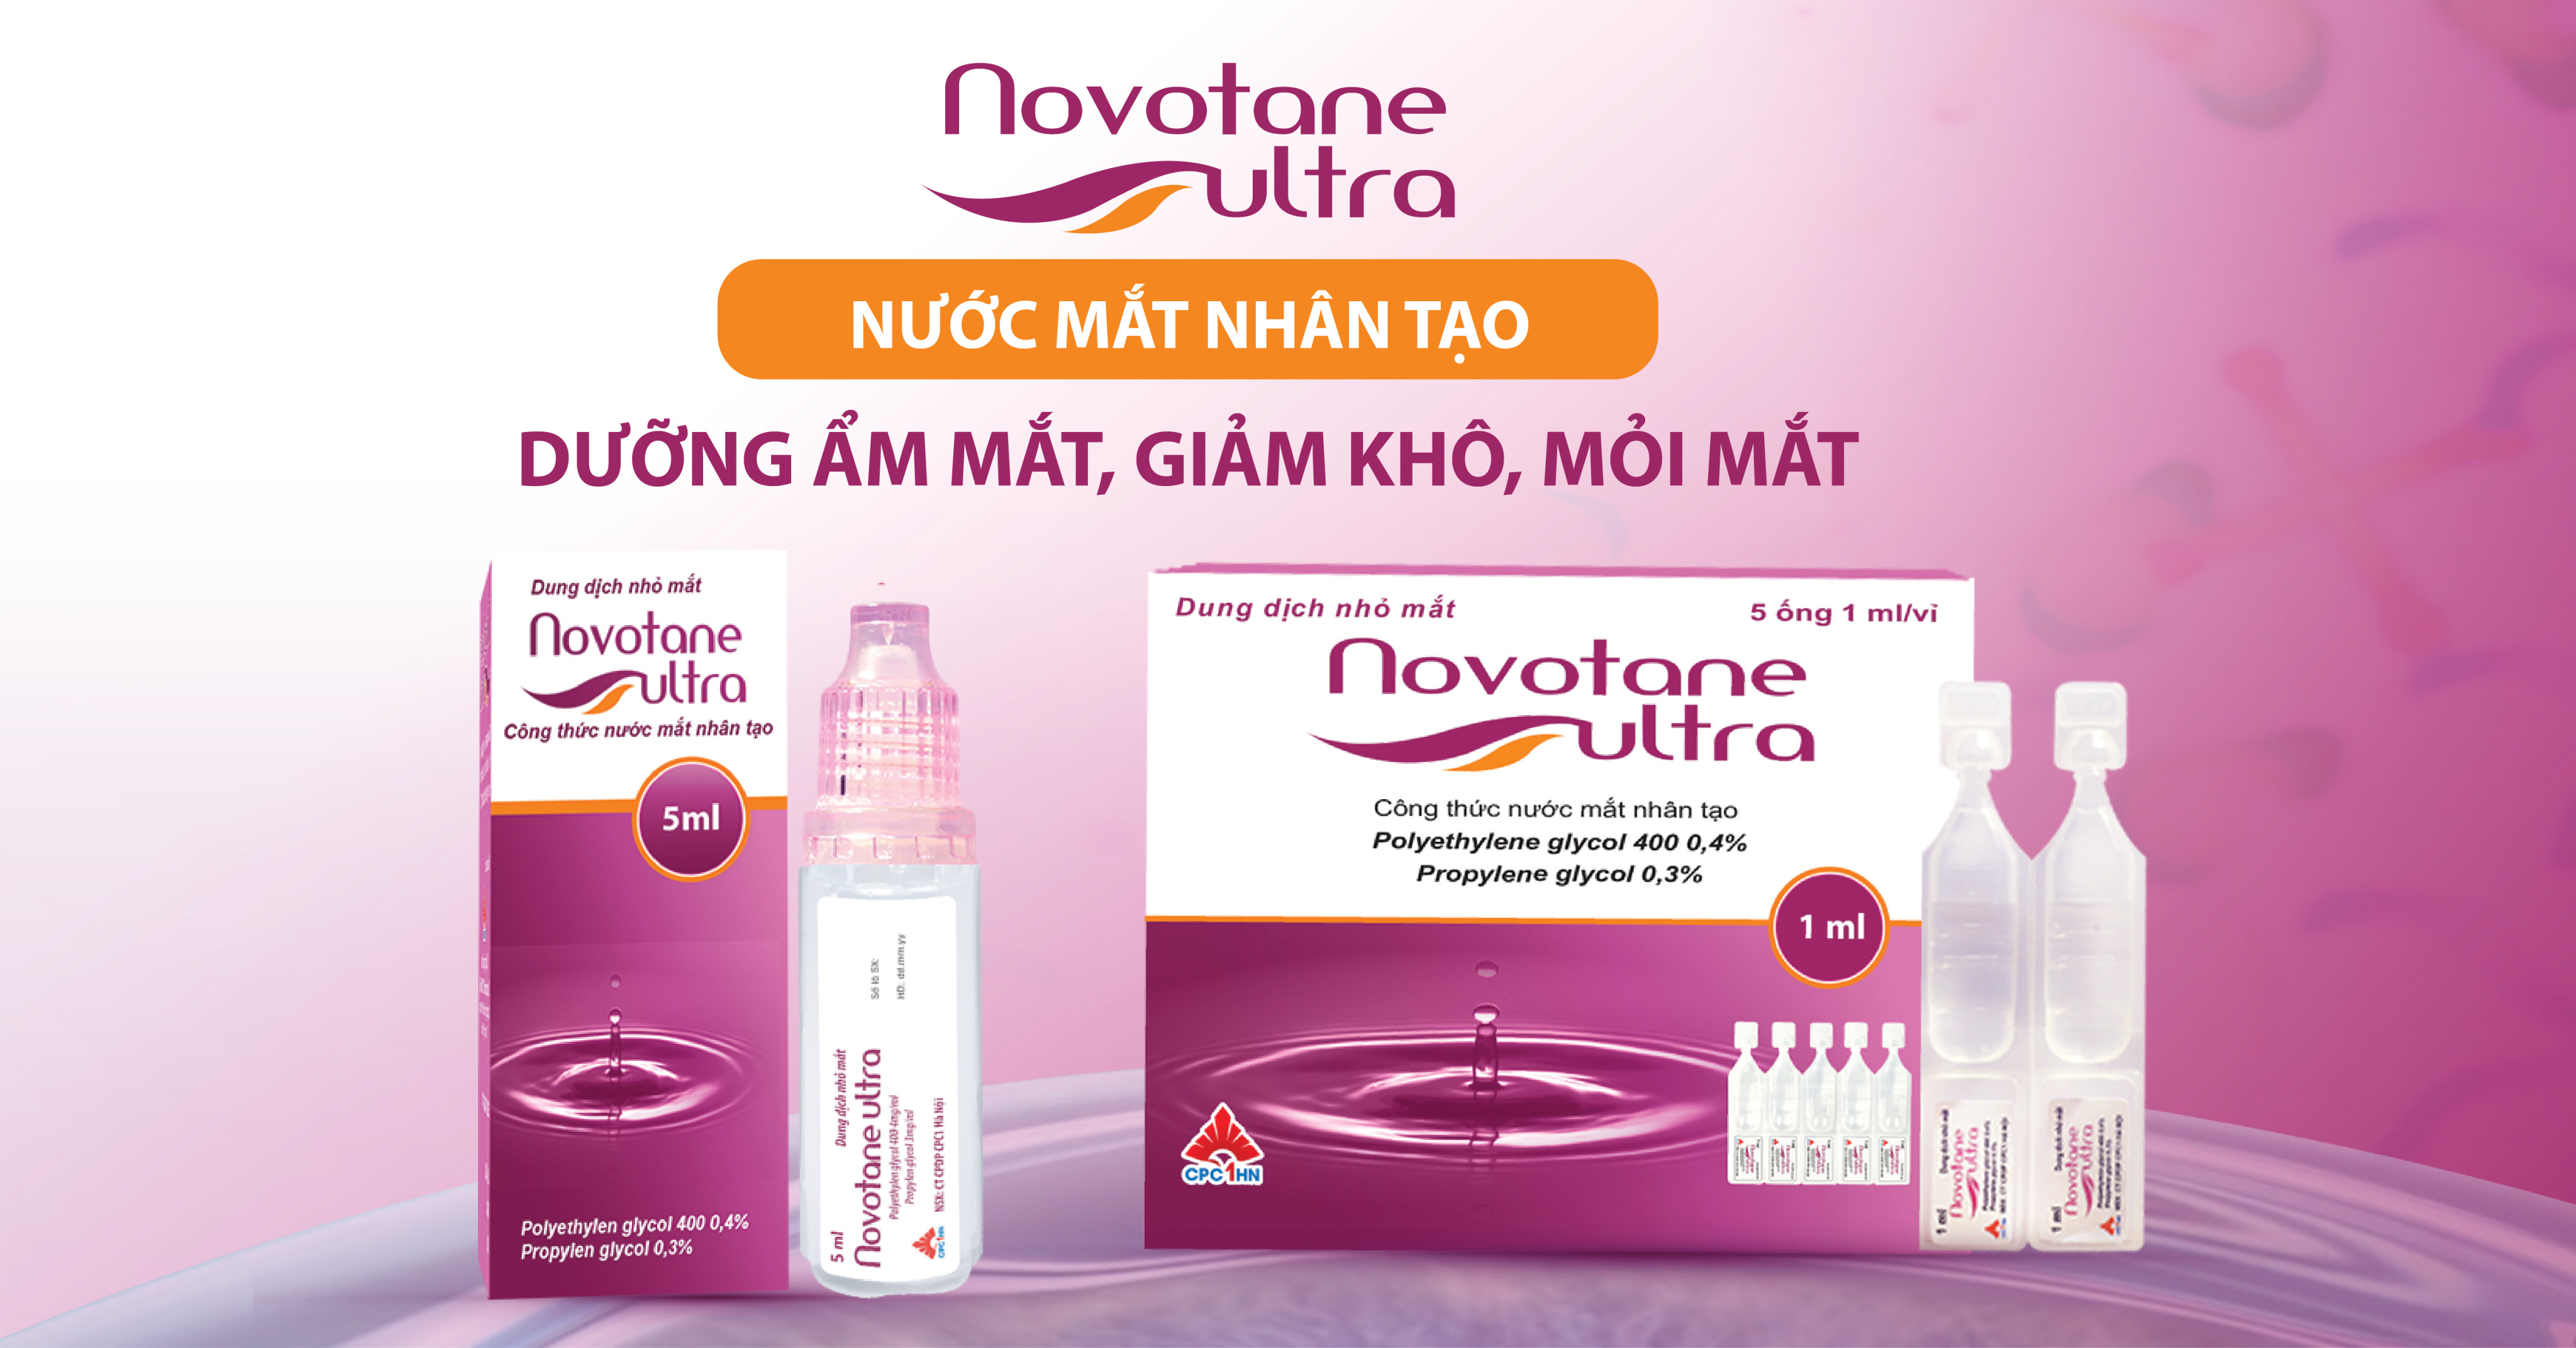 Novotane Ultra - Nước mắt nhân tạo công nghệ BFS